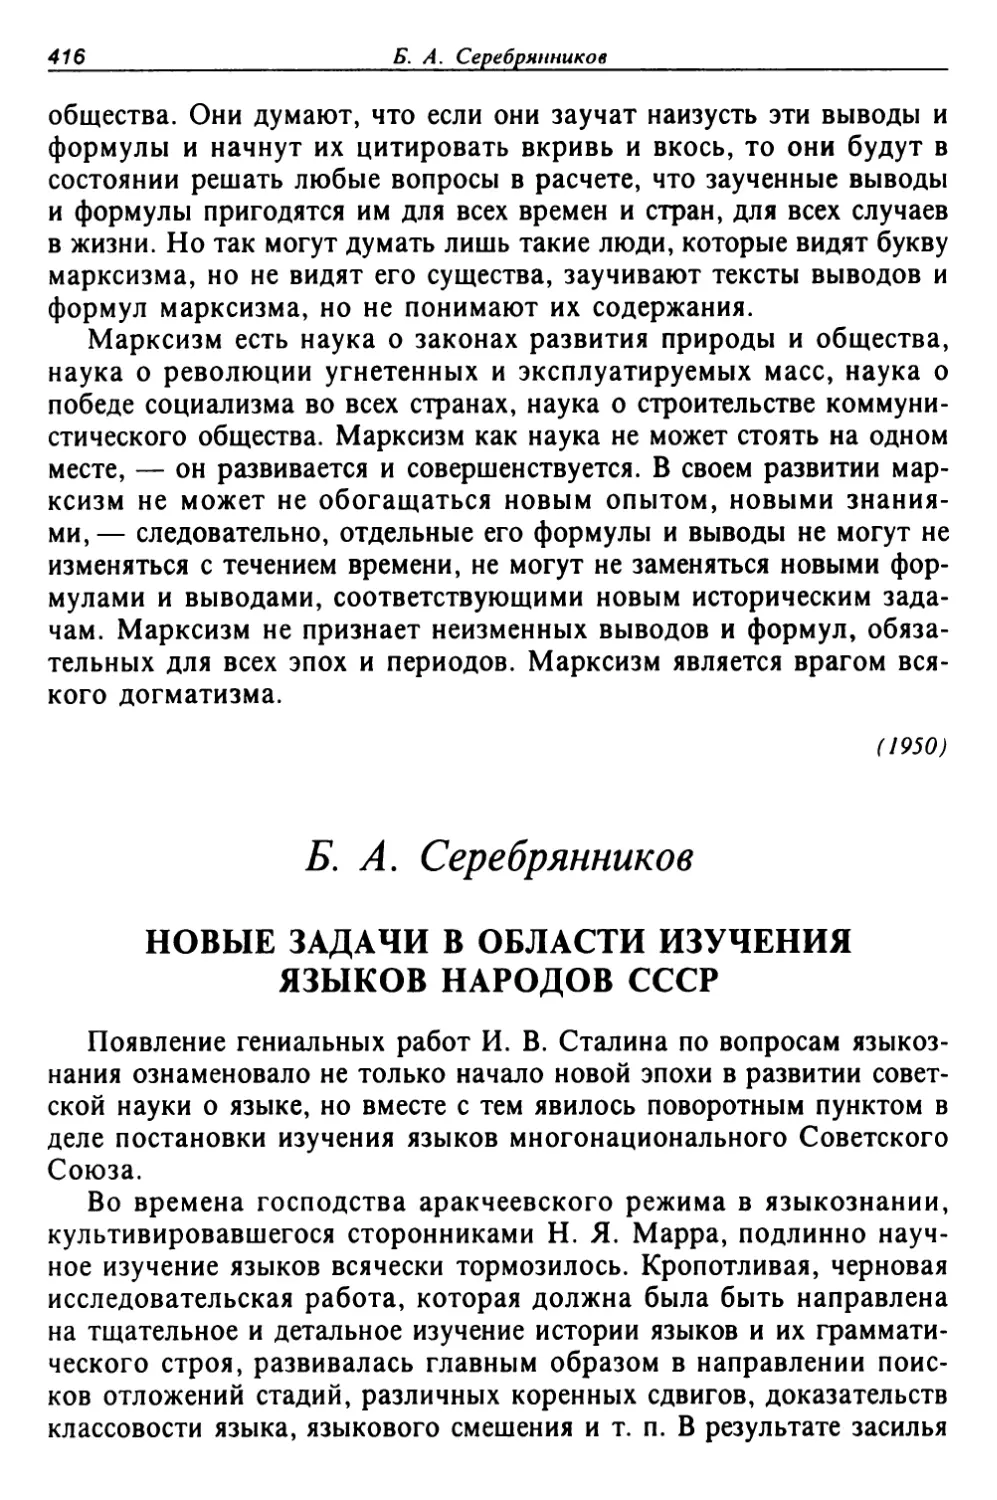 Серебренников Б. А. Новые задачи в области изучения языков народов СССР